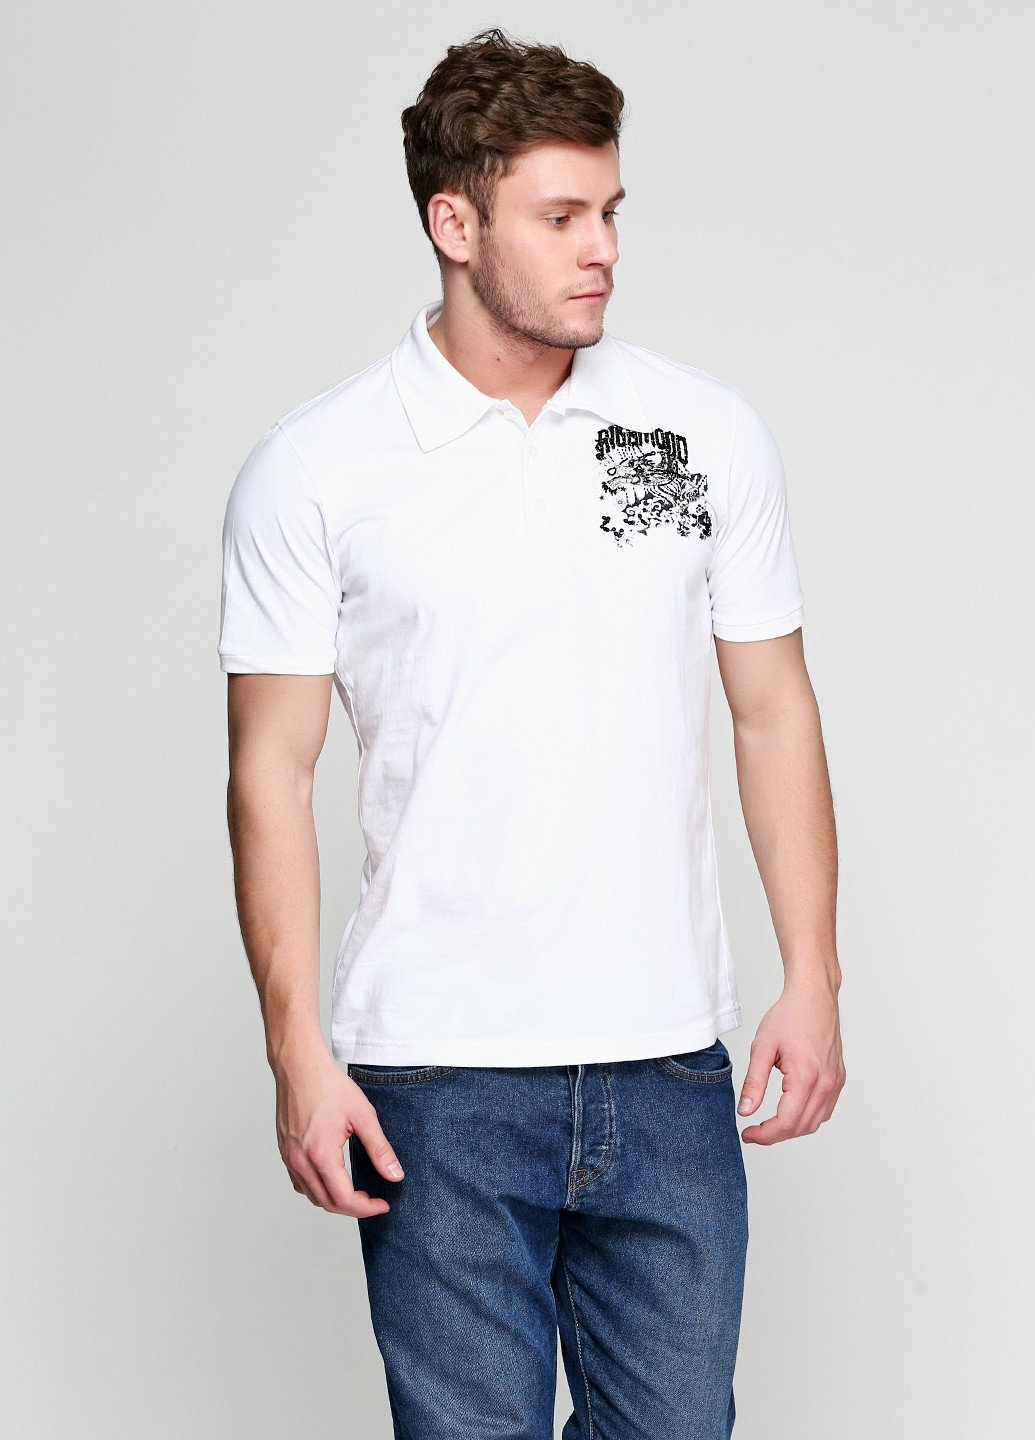 Белая футболка-поло для мужчин Richmond с рисунком